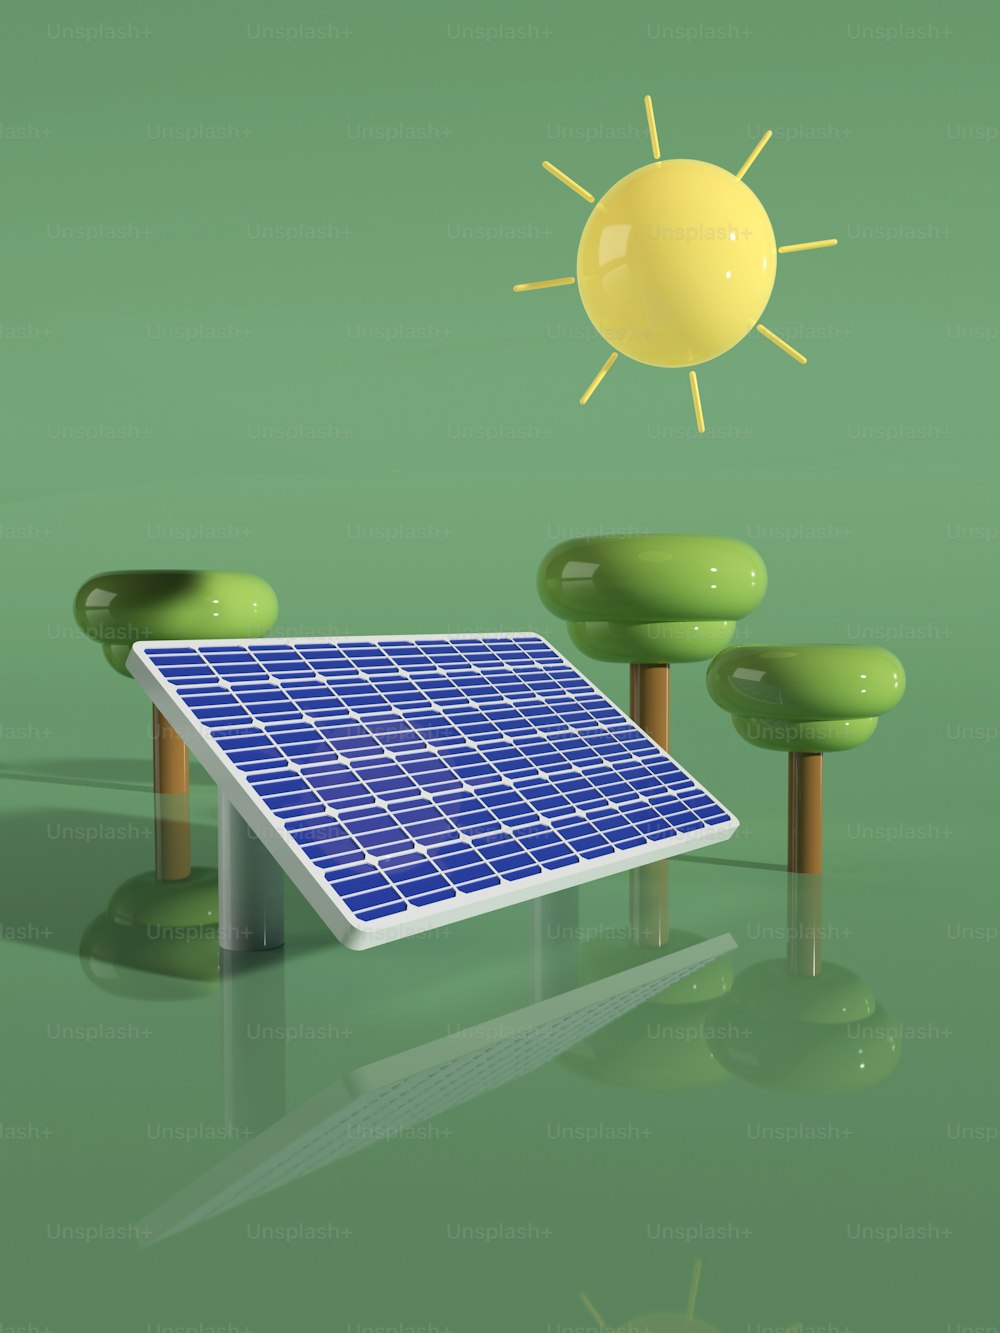 ein Solarpanel auf der grünen Wiese